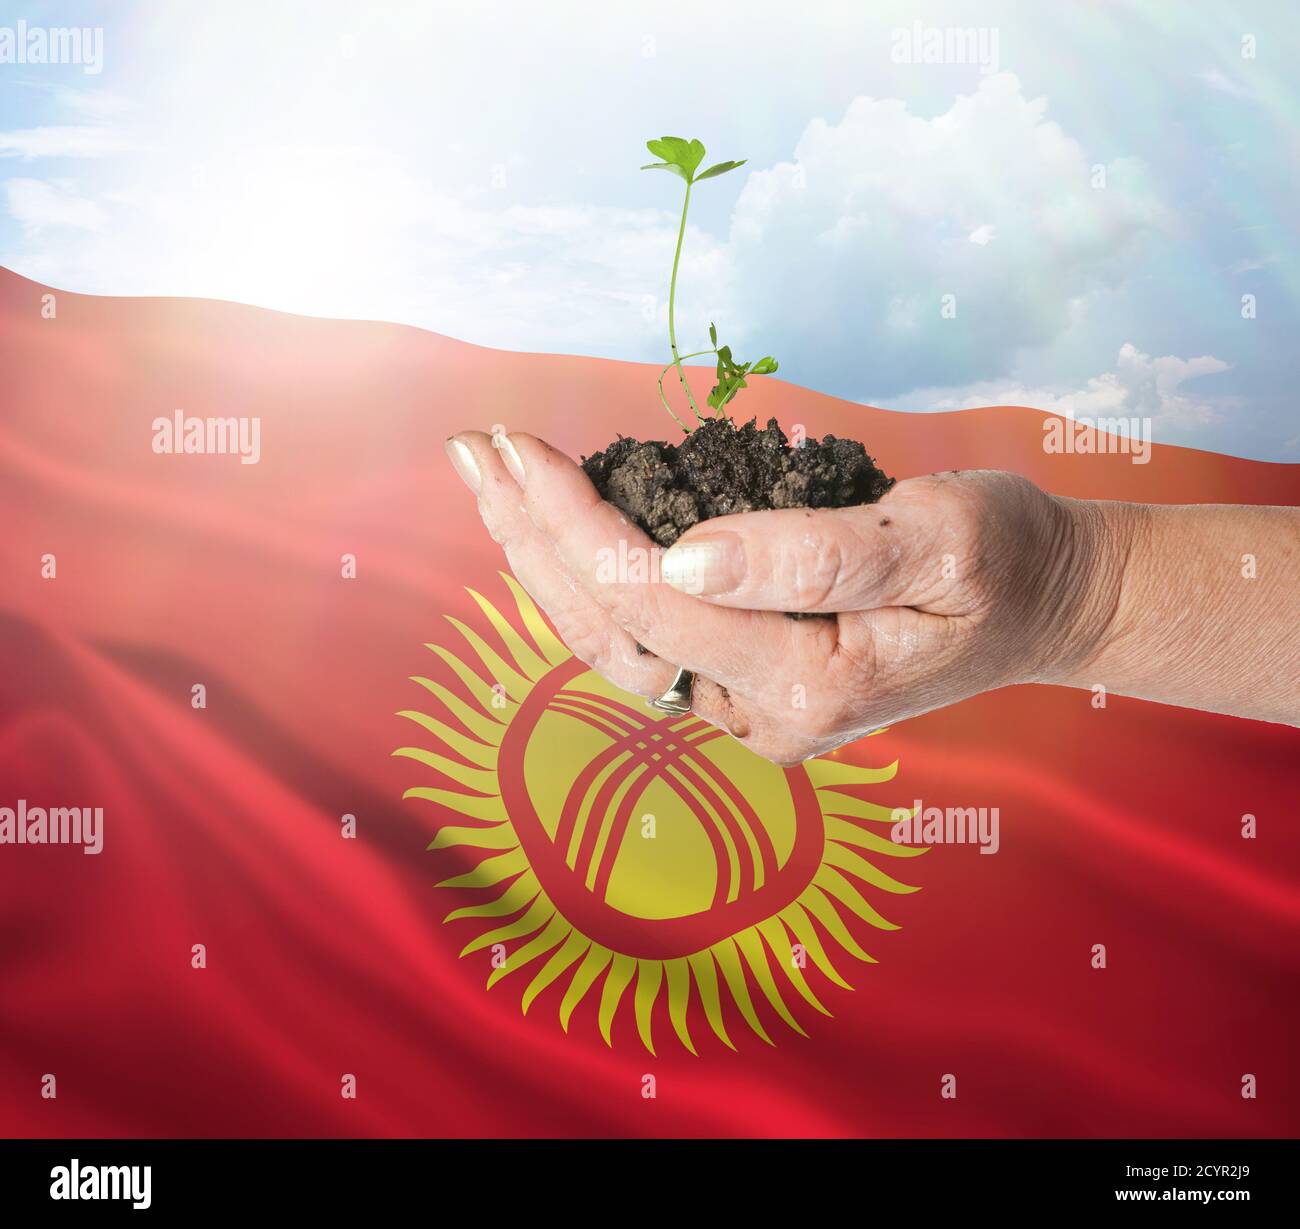 Kirguistán crecimiento y nuevo comienzo. Concepto de energía renovable verde y ecología. Mano sosteniendo planta joven. Foto de stock